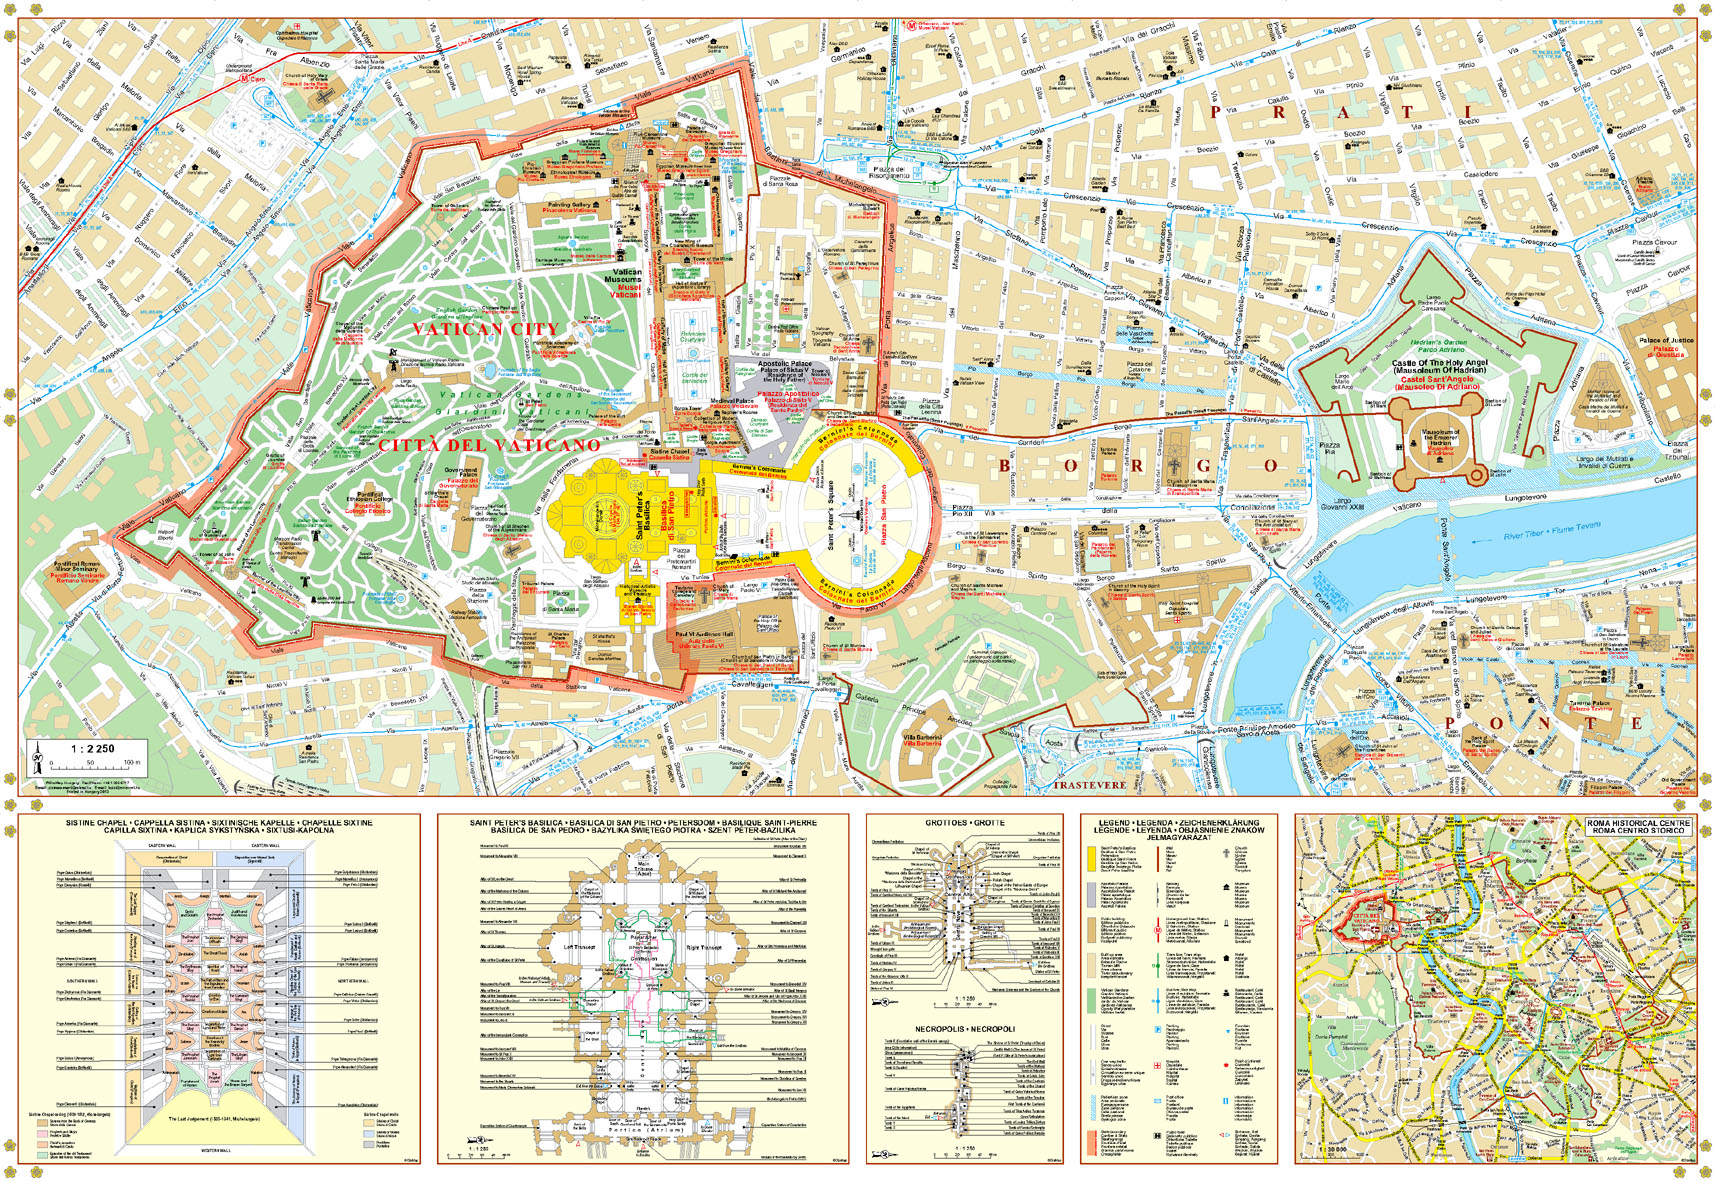 A Vatican várostérkép által lefedett terület